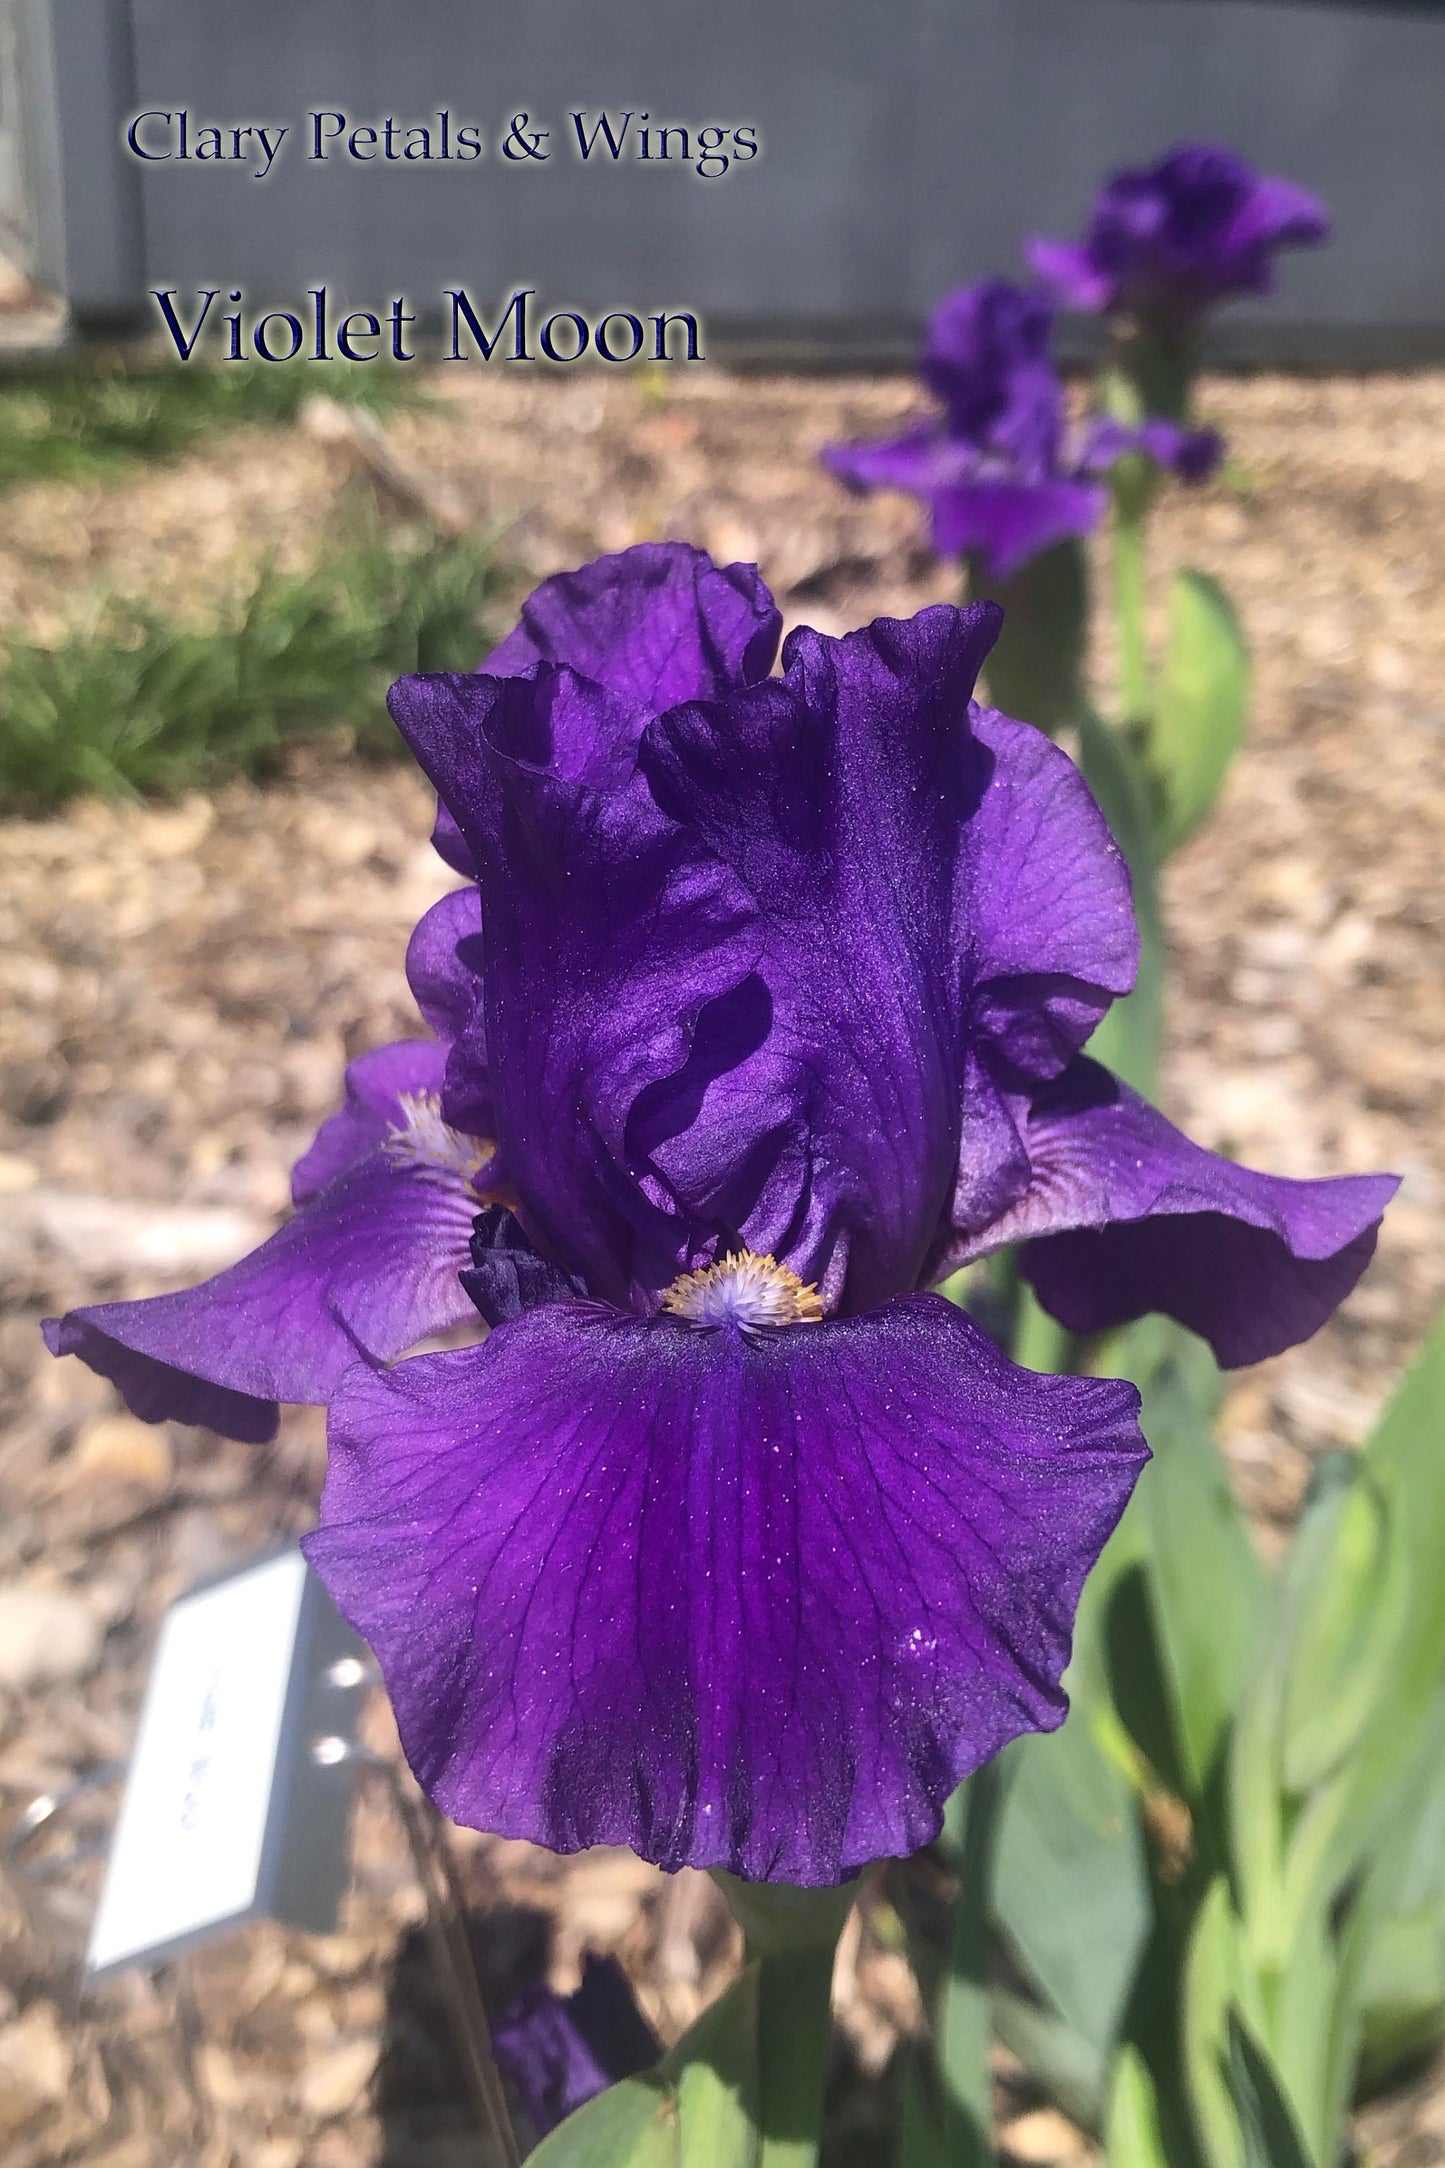 VIOLET MOON - 2018 Intermediate Bearded Iris - Reblooming